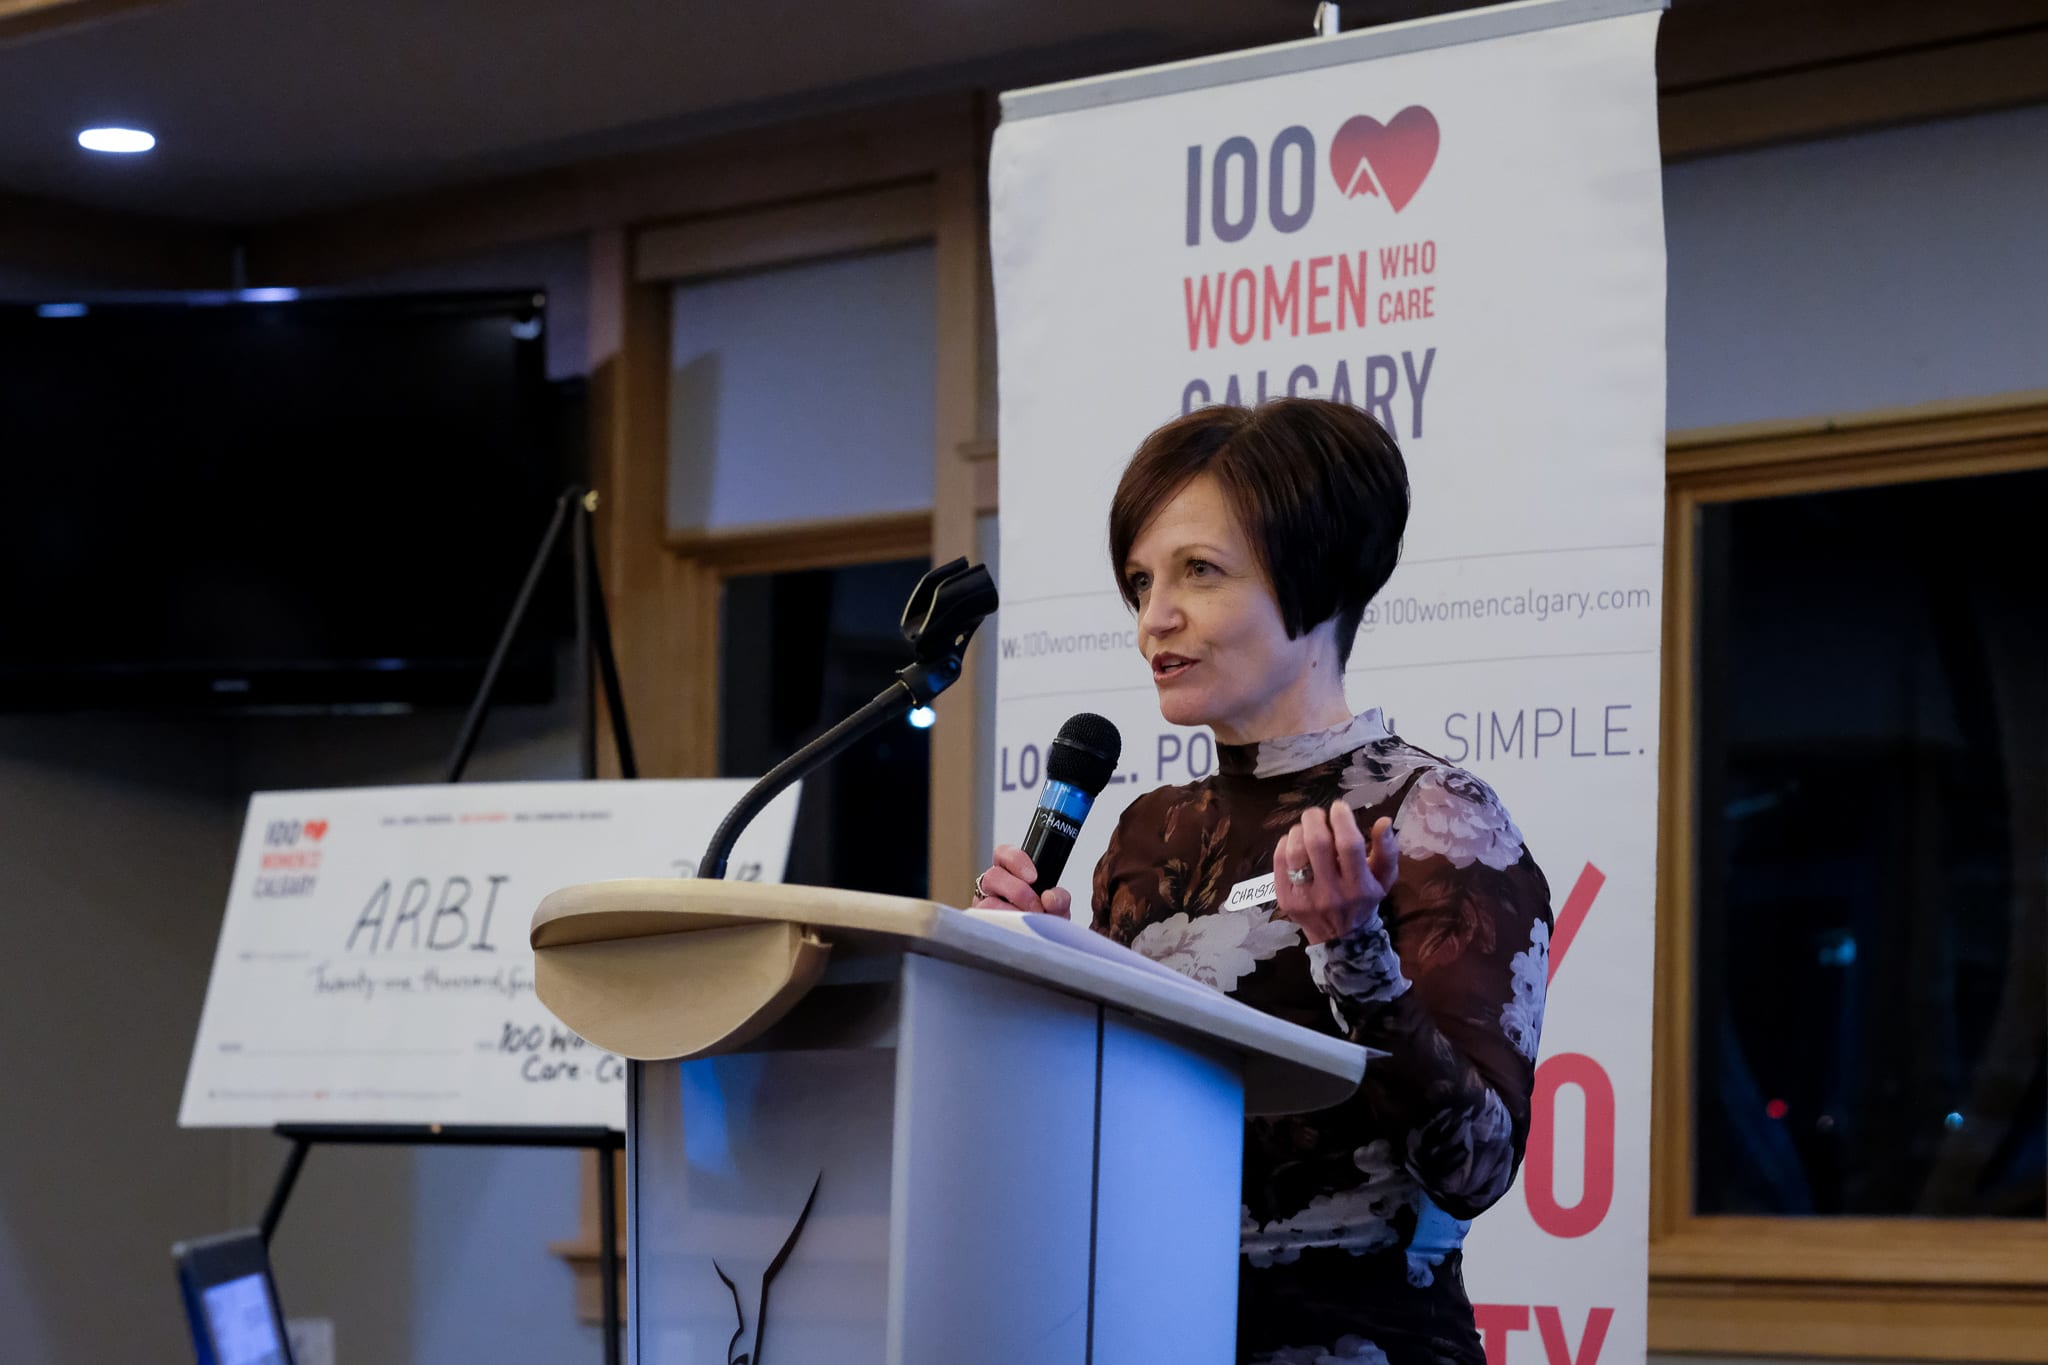 Christine Mack-Granger spoke for Calgary Health Trust - Grief Support Program